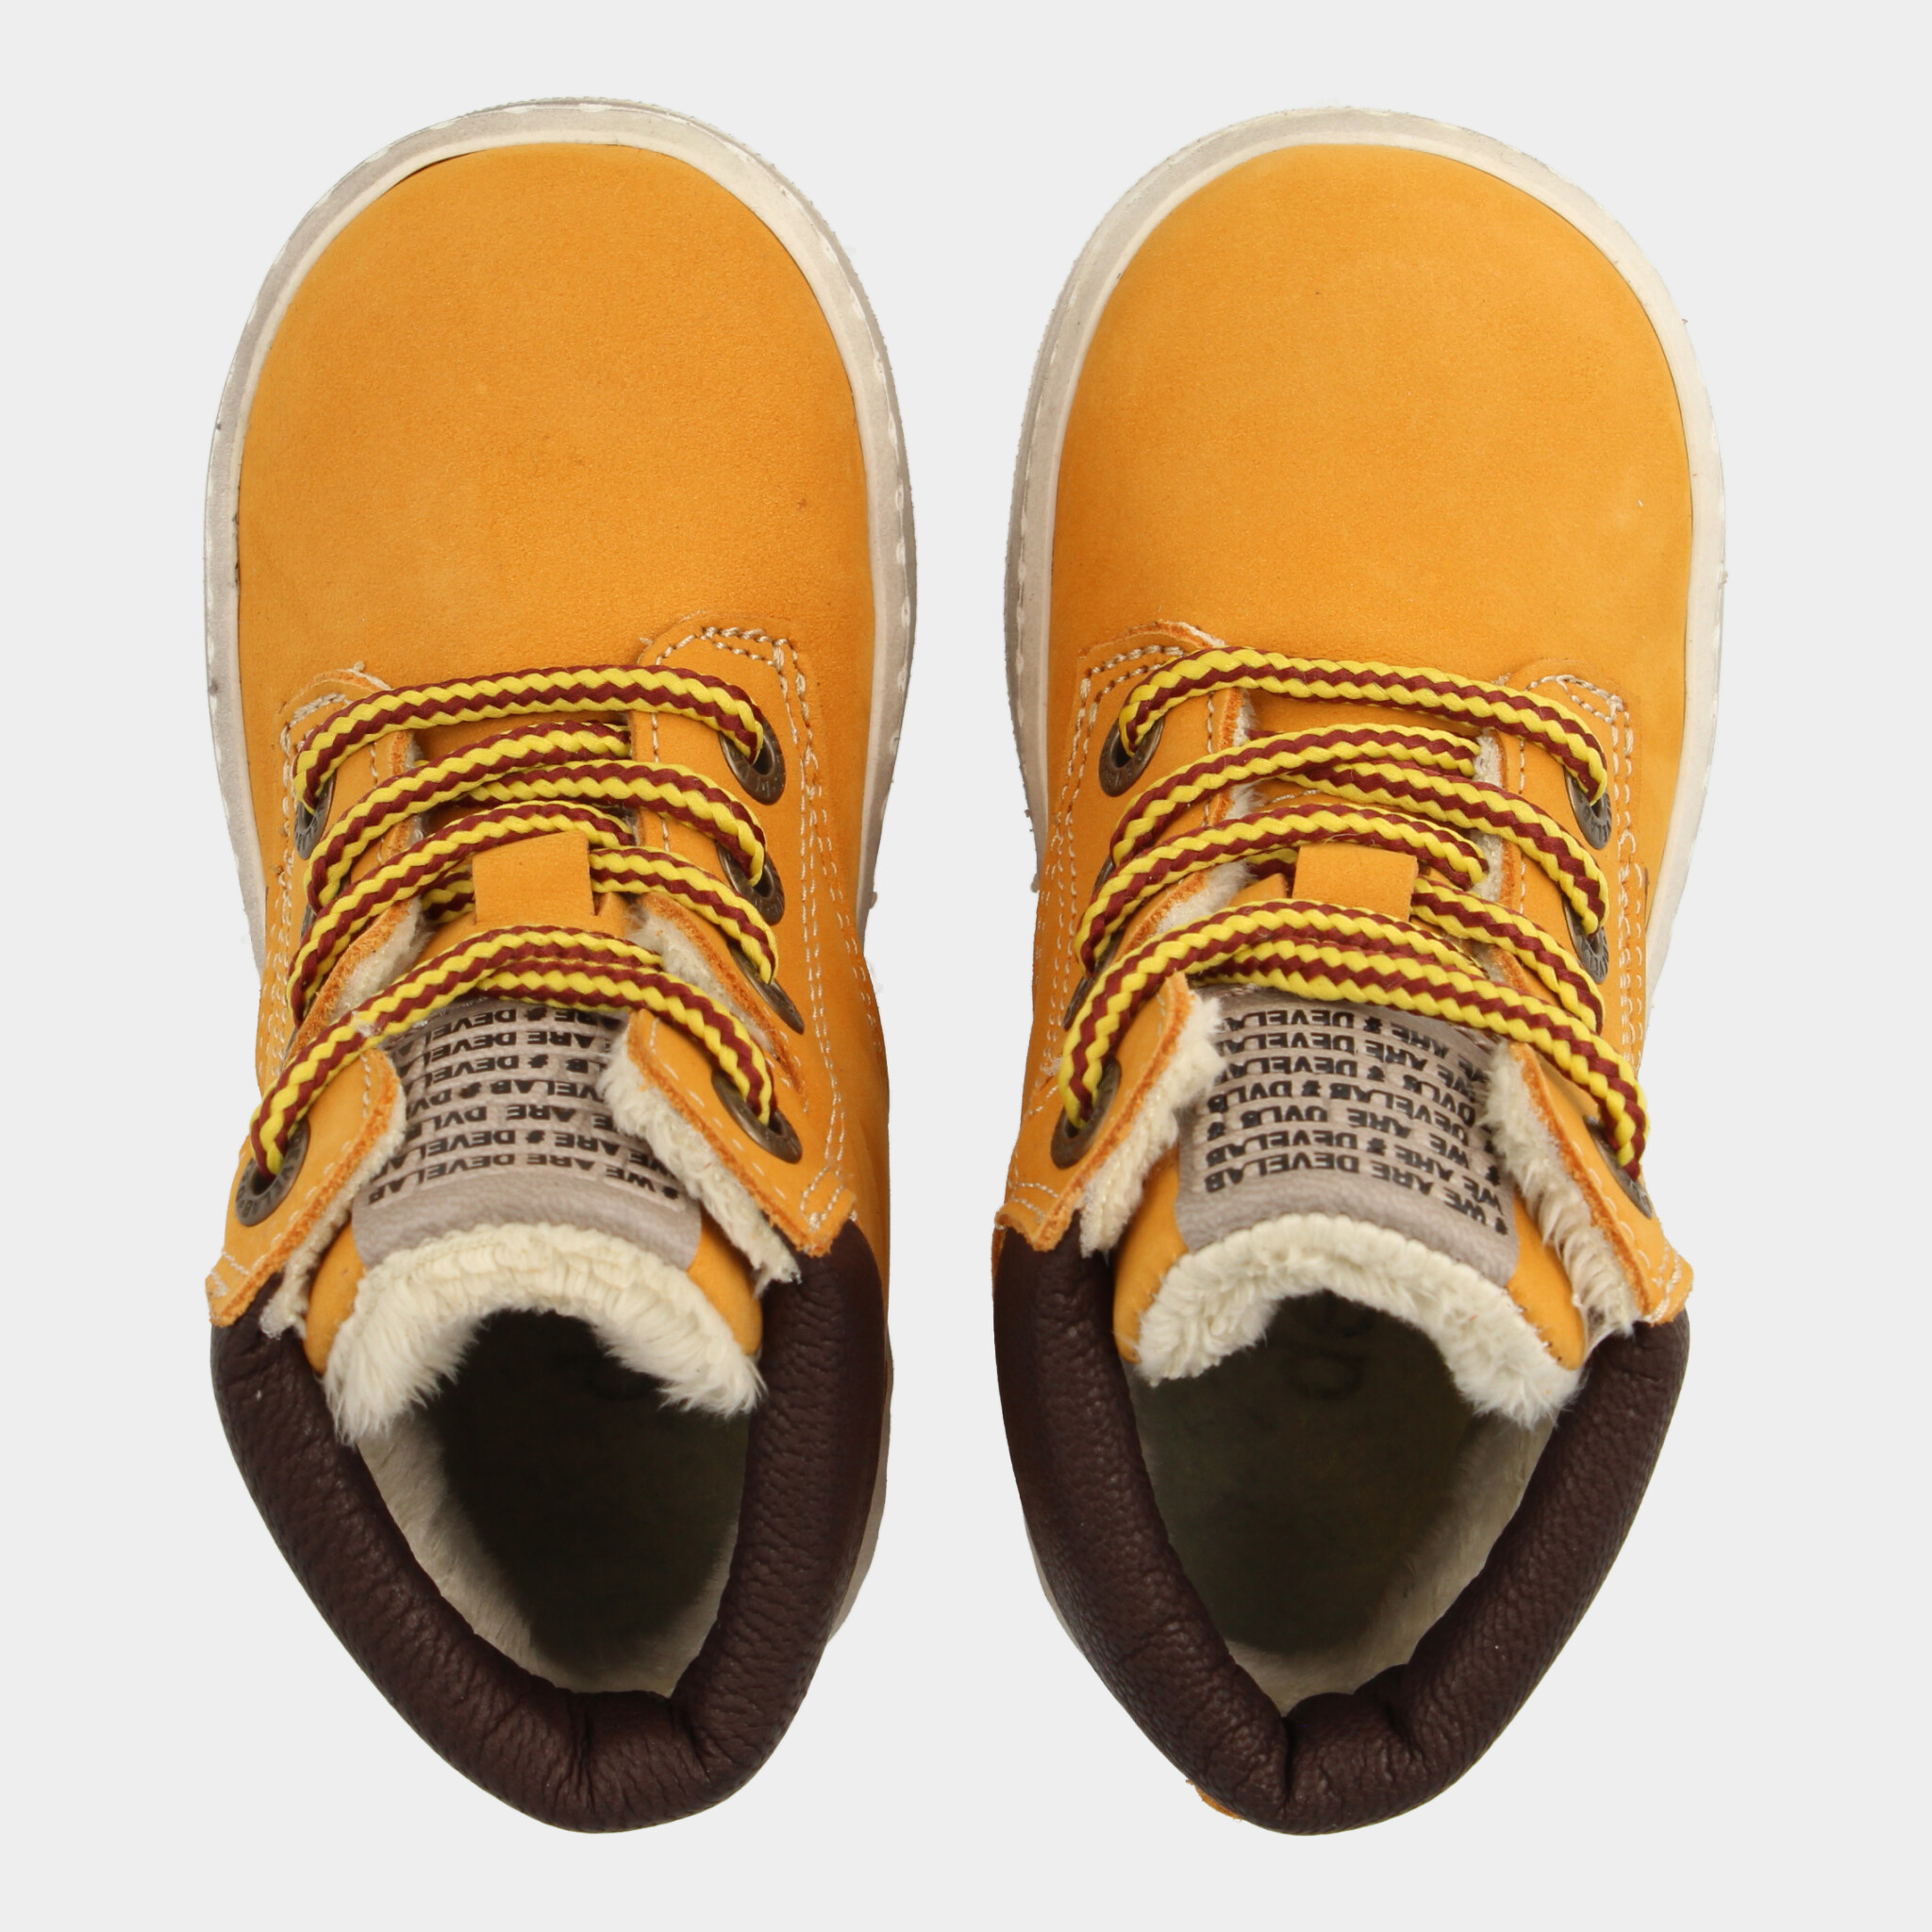 Hoge Gele Sneakers | Develab 41855